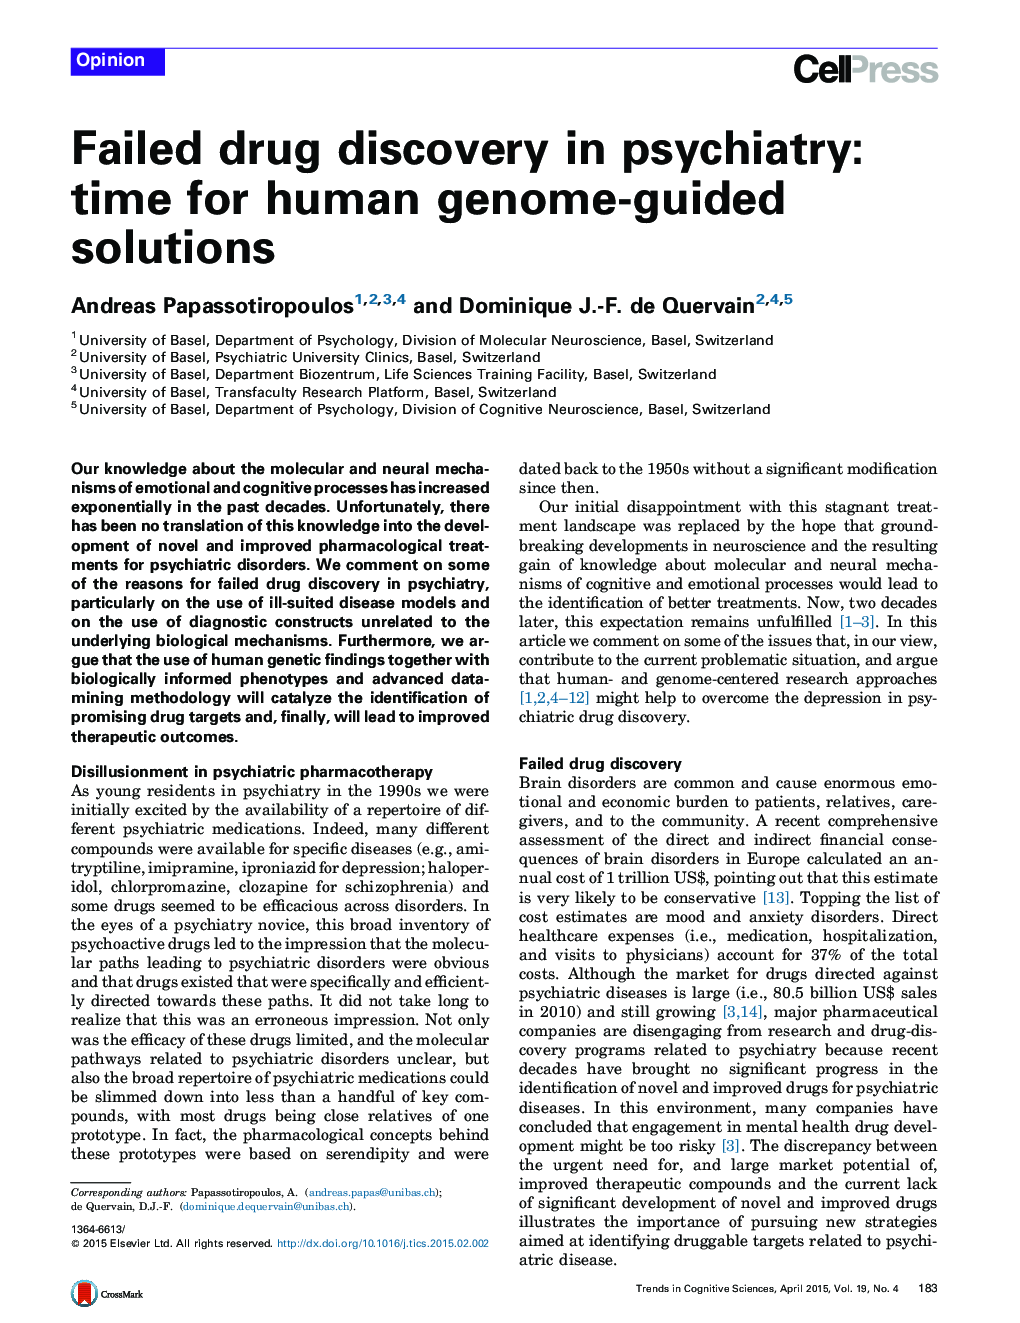 کشف مواد مخدر شکست خورده در روانپزشکی: زمان برای راه حل های ژنوم انسان هدایت